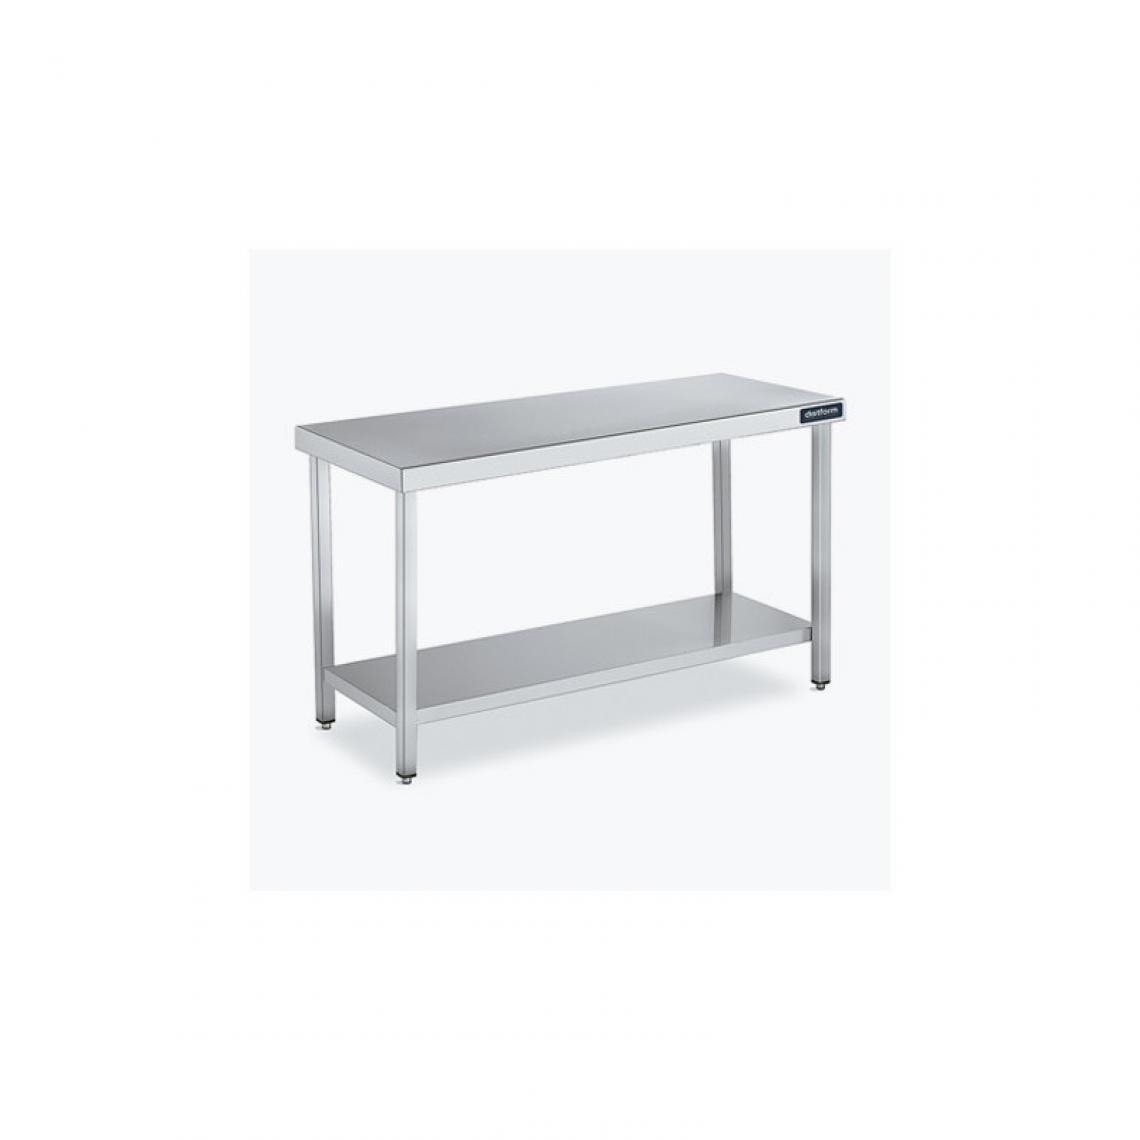 DISTFORM - Table Centrale 600x700X600 avec Étagère - Distform - Inox 18/101400x700x600mm - Tables à manger